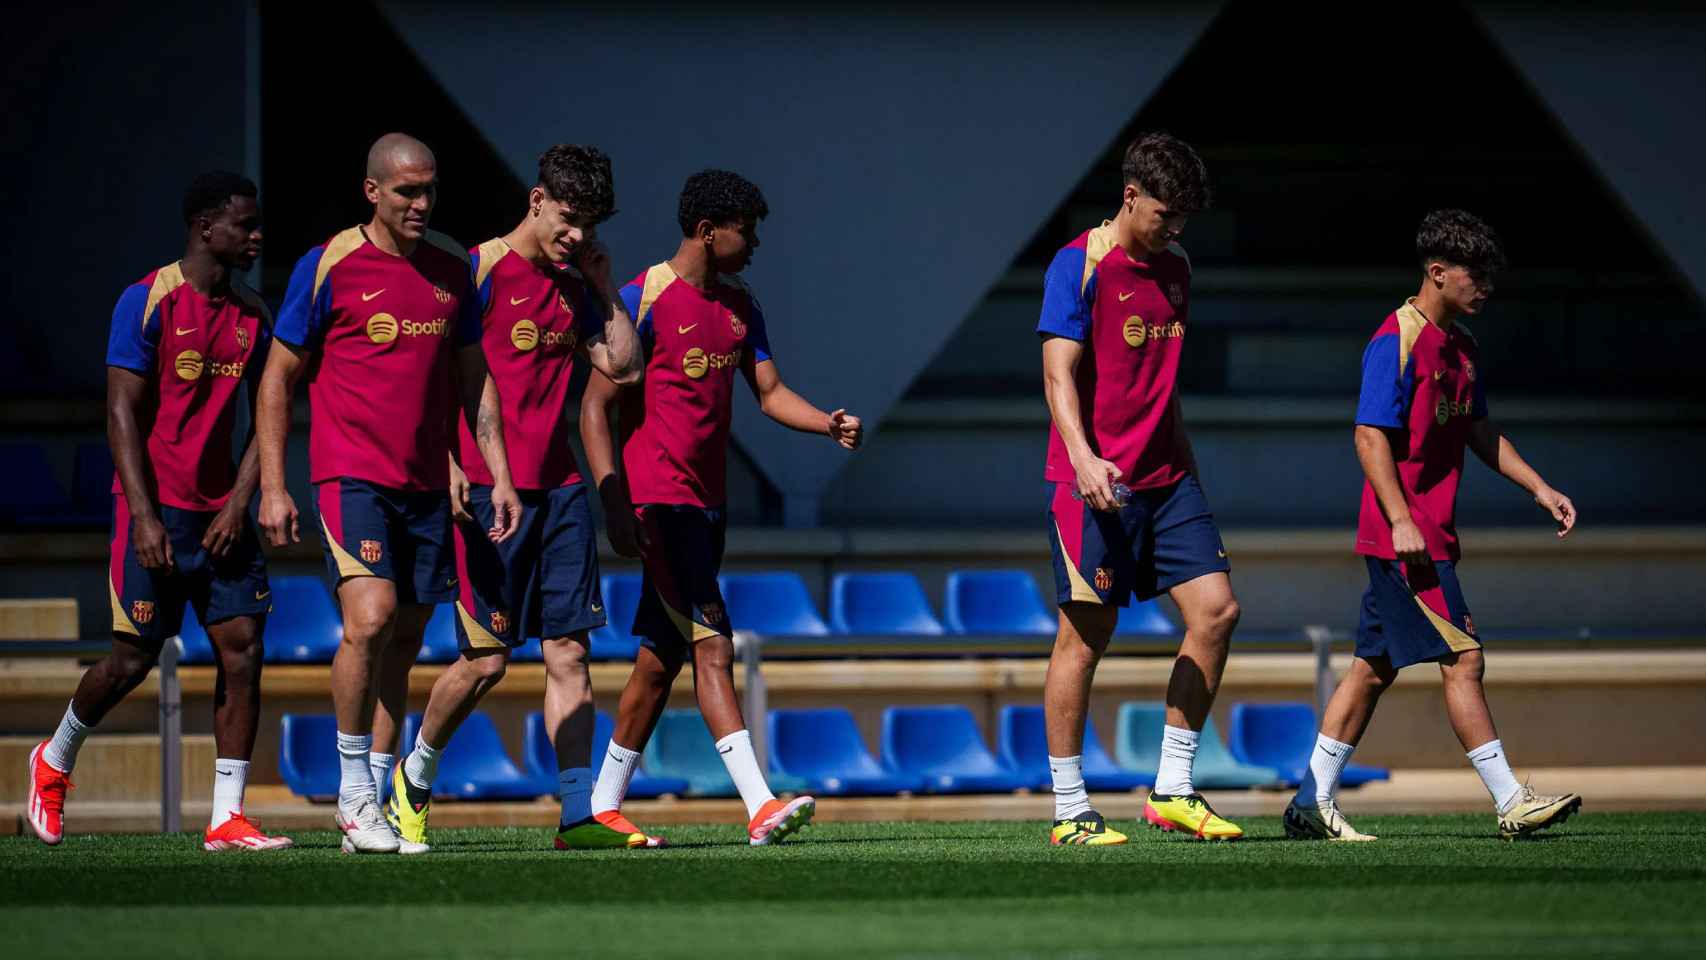 Los canteranos del Barça en una sesión de entrenamiento en la Ciutat Esportiva